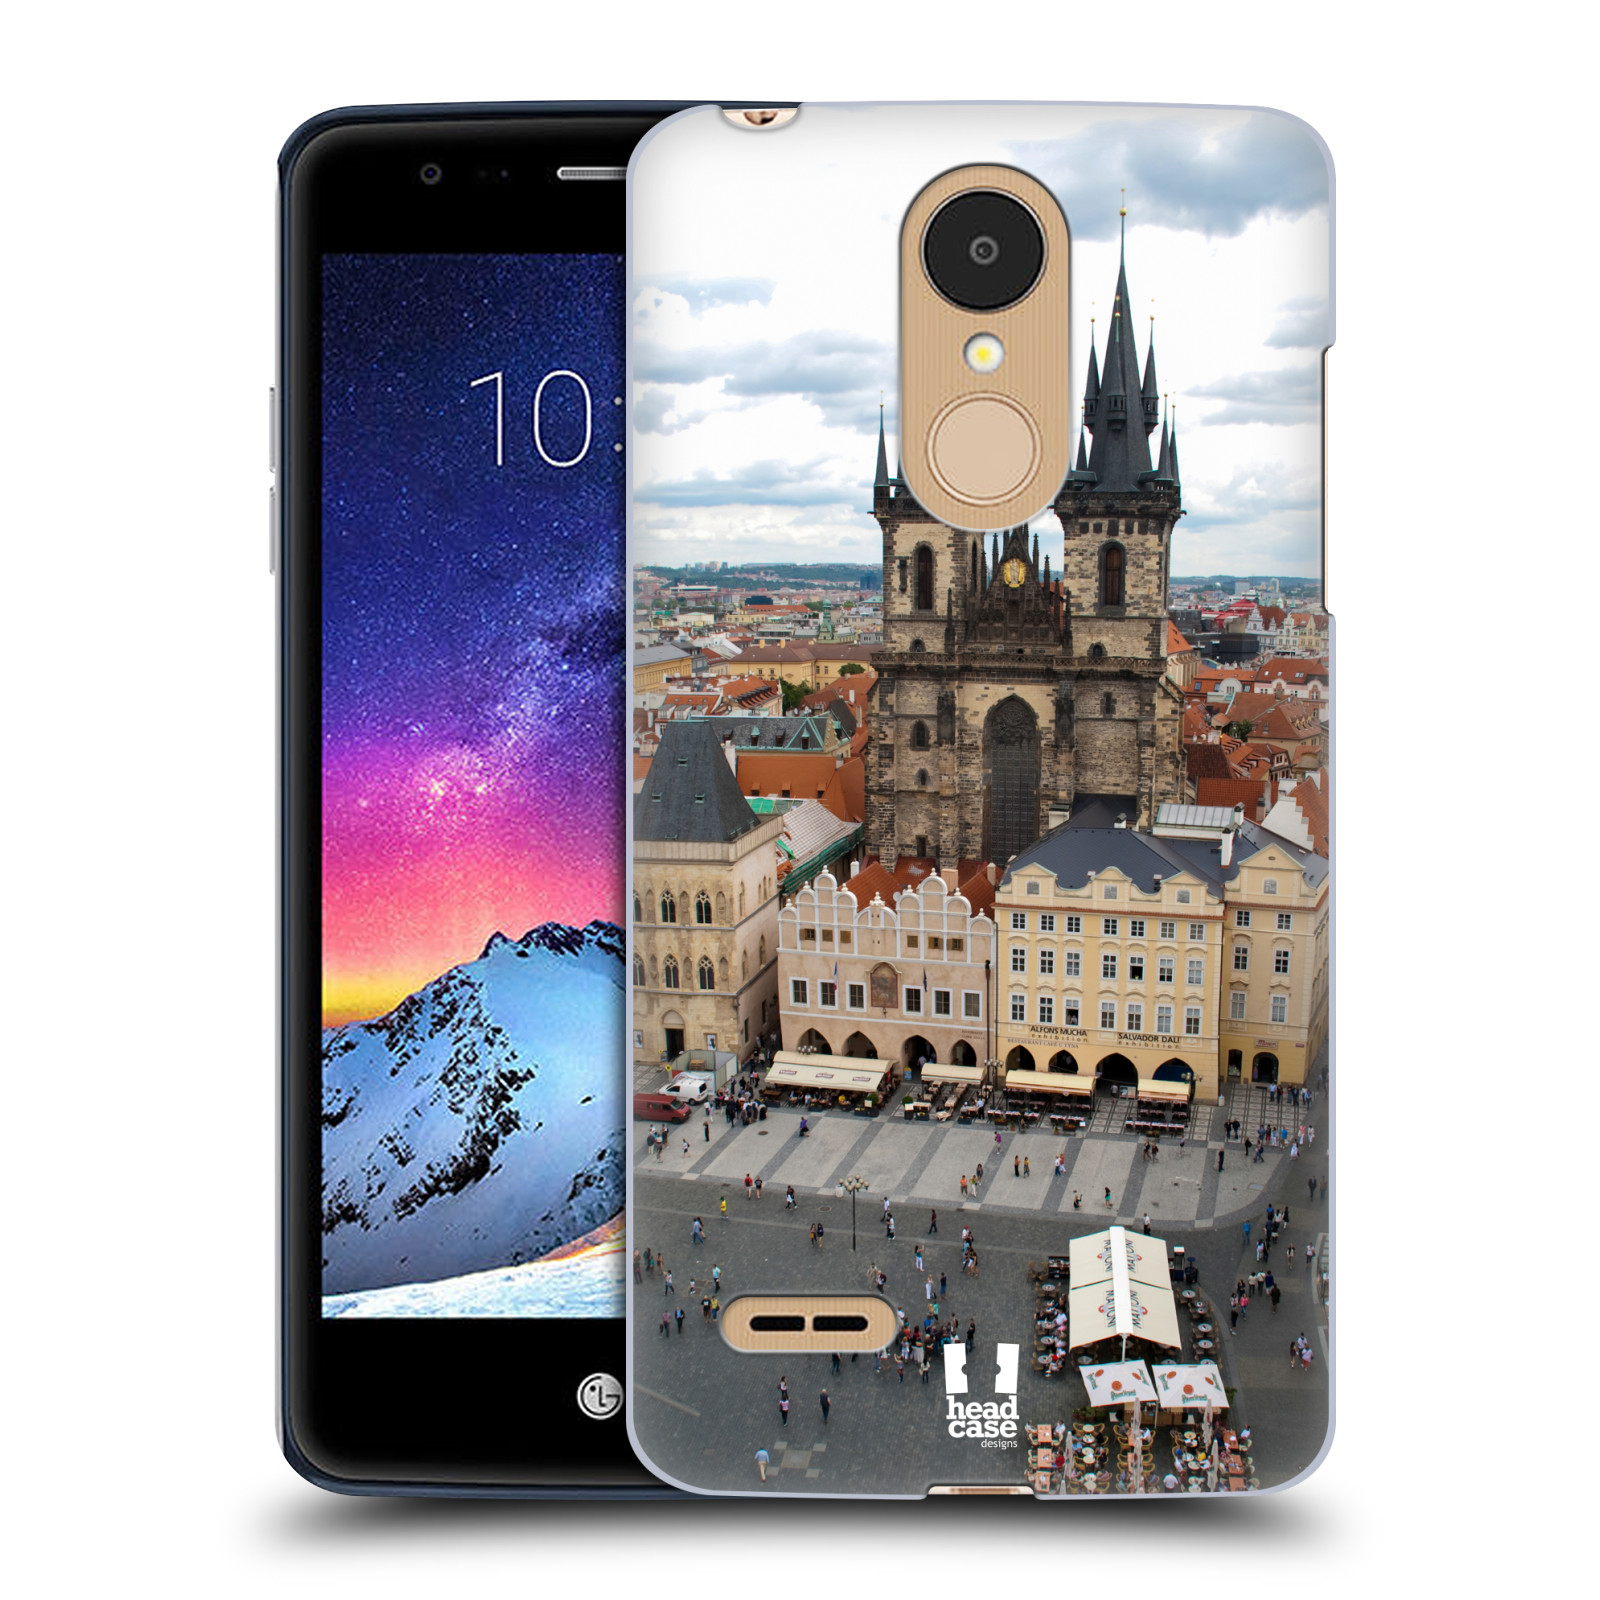 HEAD CASE plastový obal na mobil LG K9 / K8 2018 vzor Města foto náměstí ČESKÁ REPUBLIKA, PRAHA, STAROMĚSTSKÉ NÁMĚSTÍ